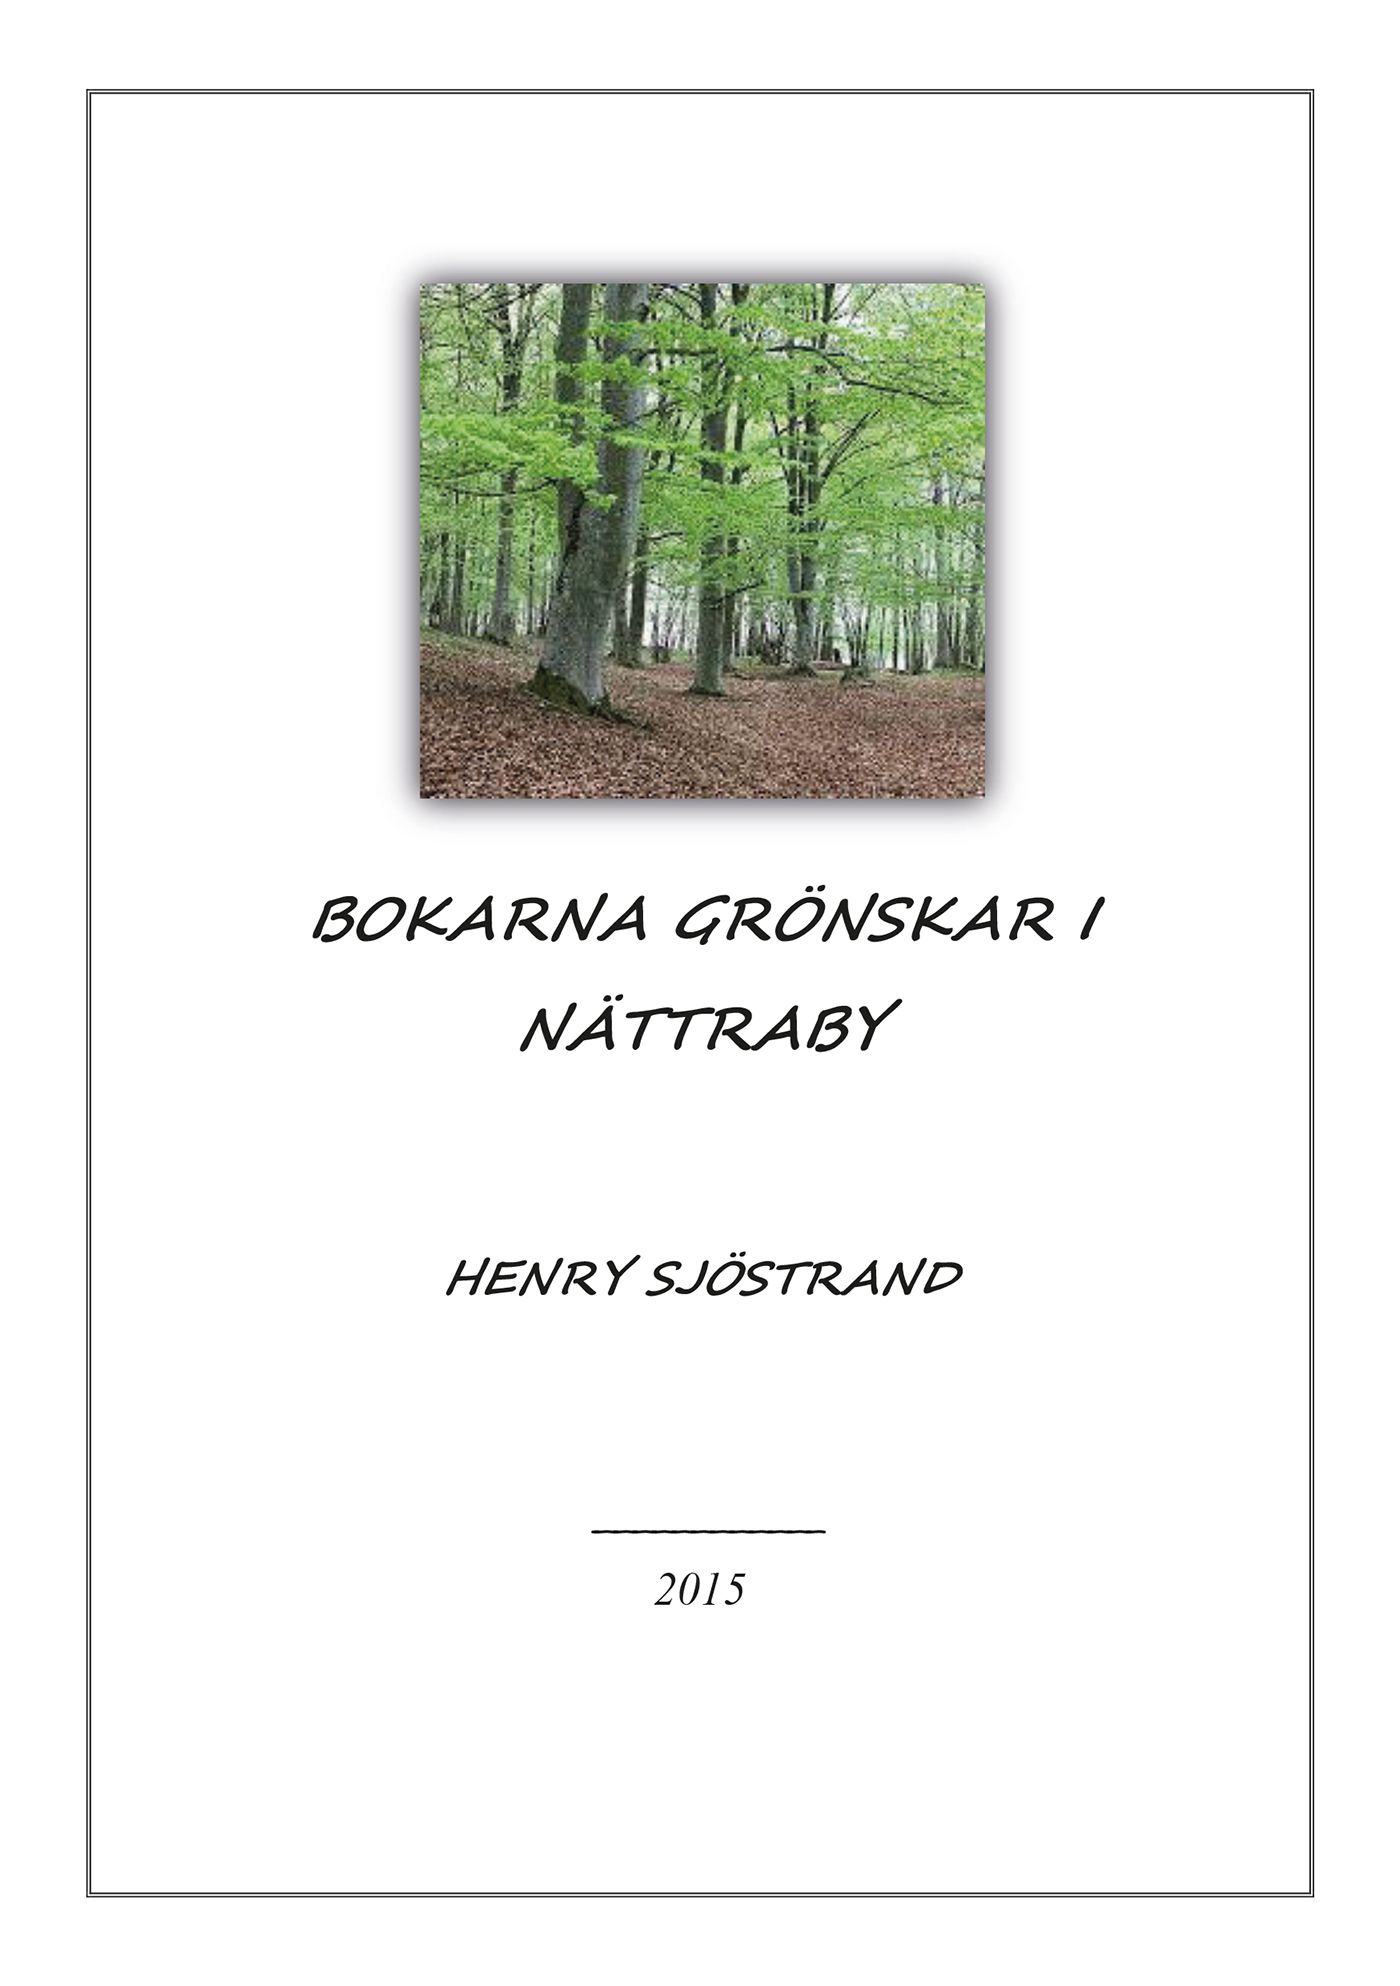 Bokarna grönskar i Nättraby, e-bog af Henry Sjöstrand